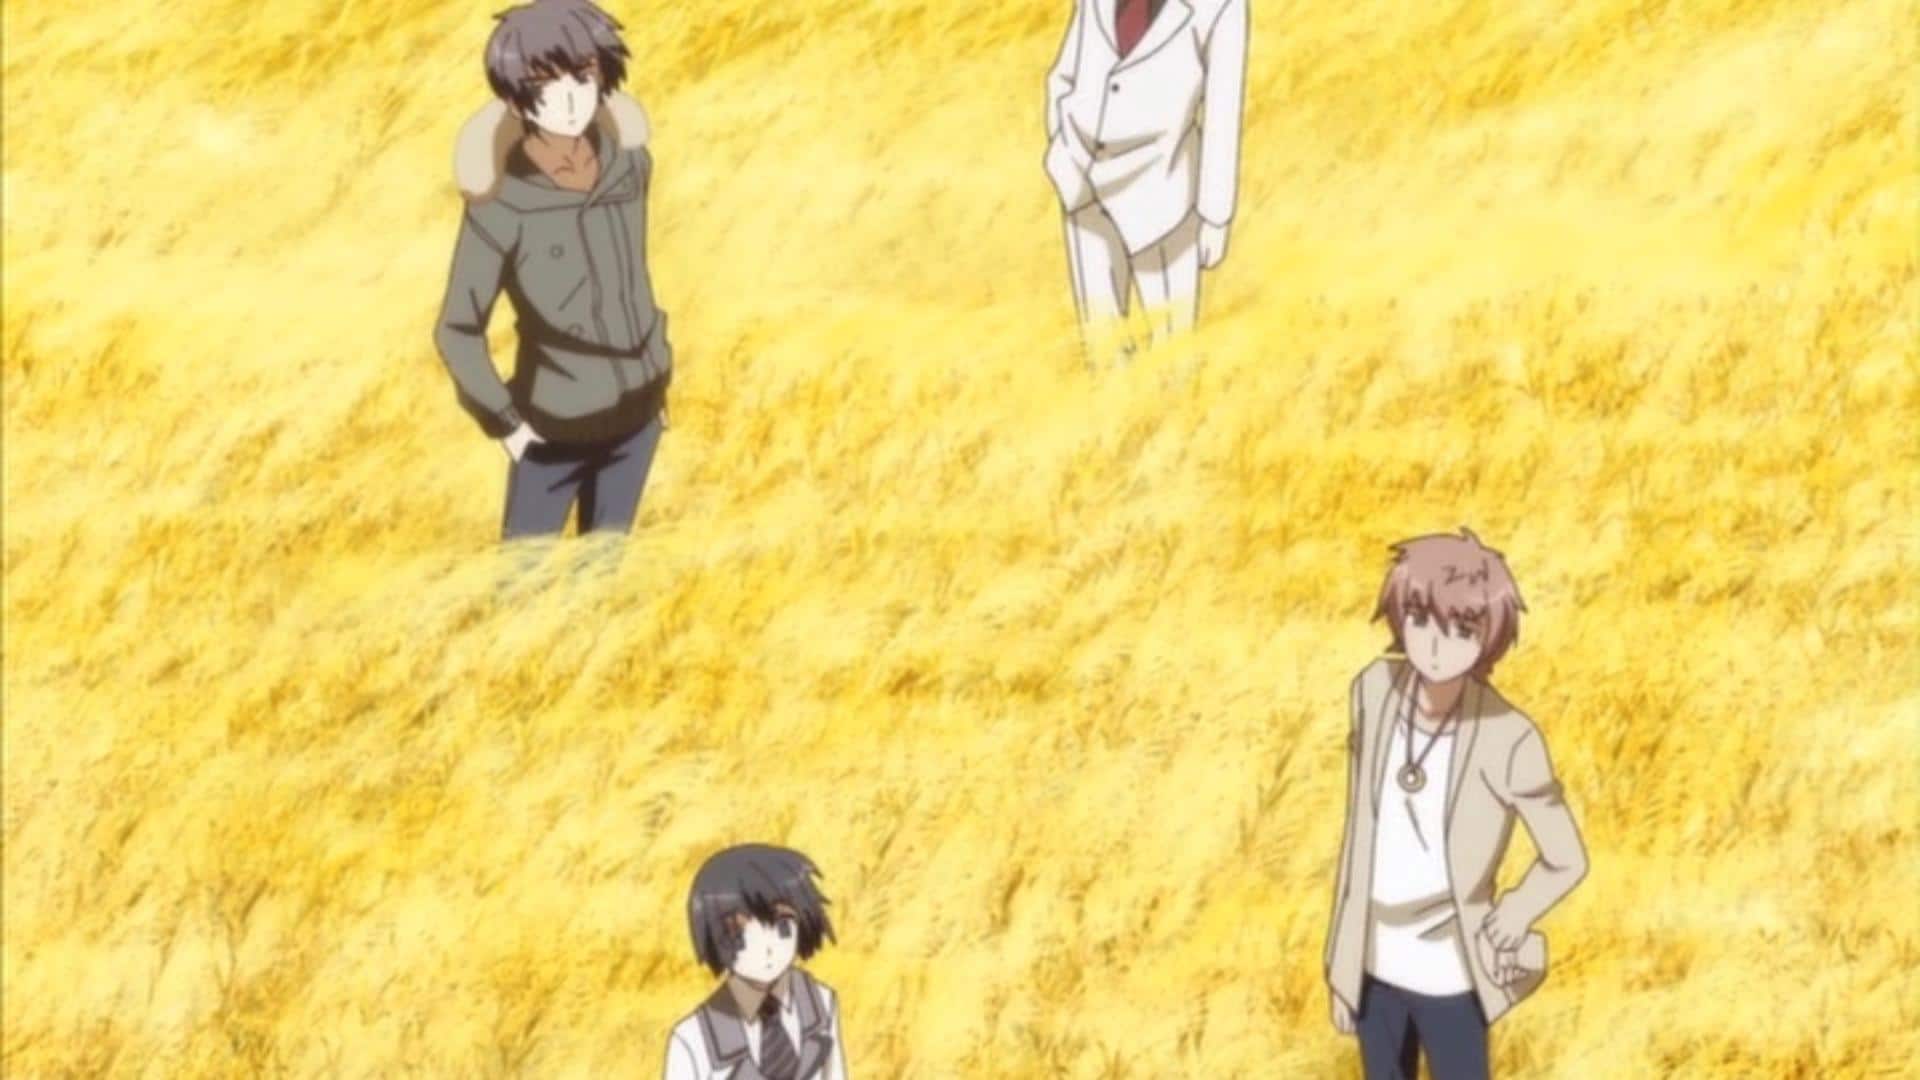 Oretachi ni Tsubasa wa Nai: Under the Innocent Sky. (Anime TV 2011)